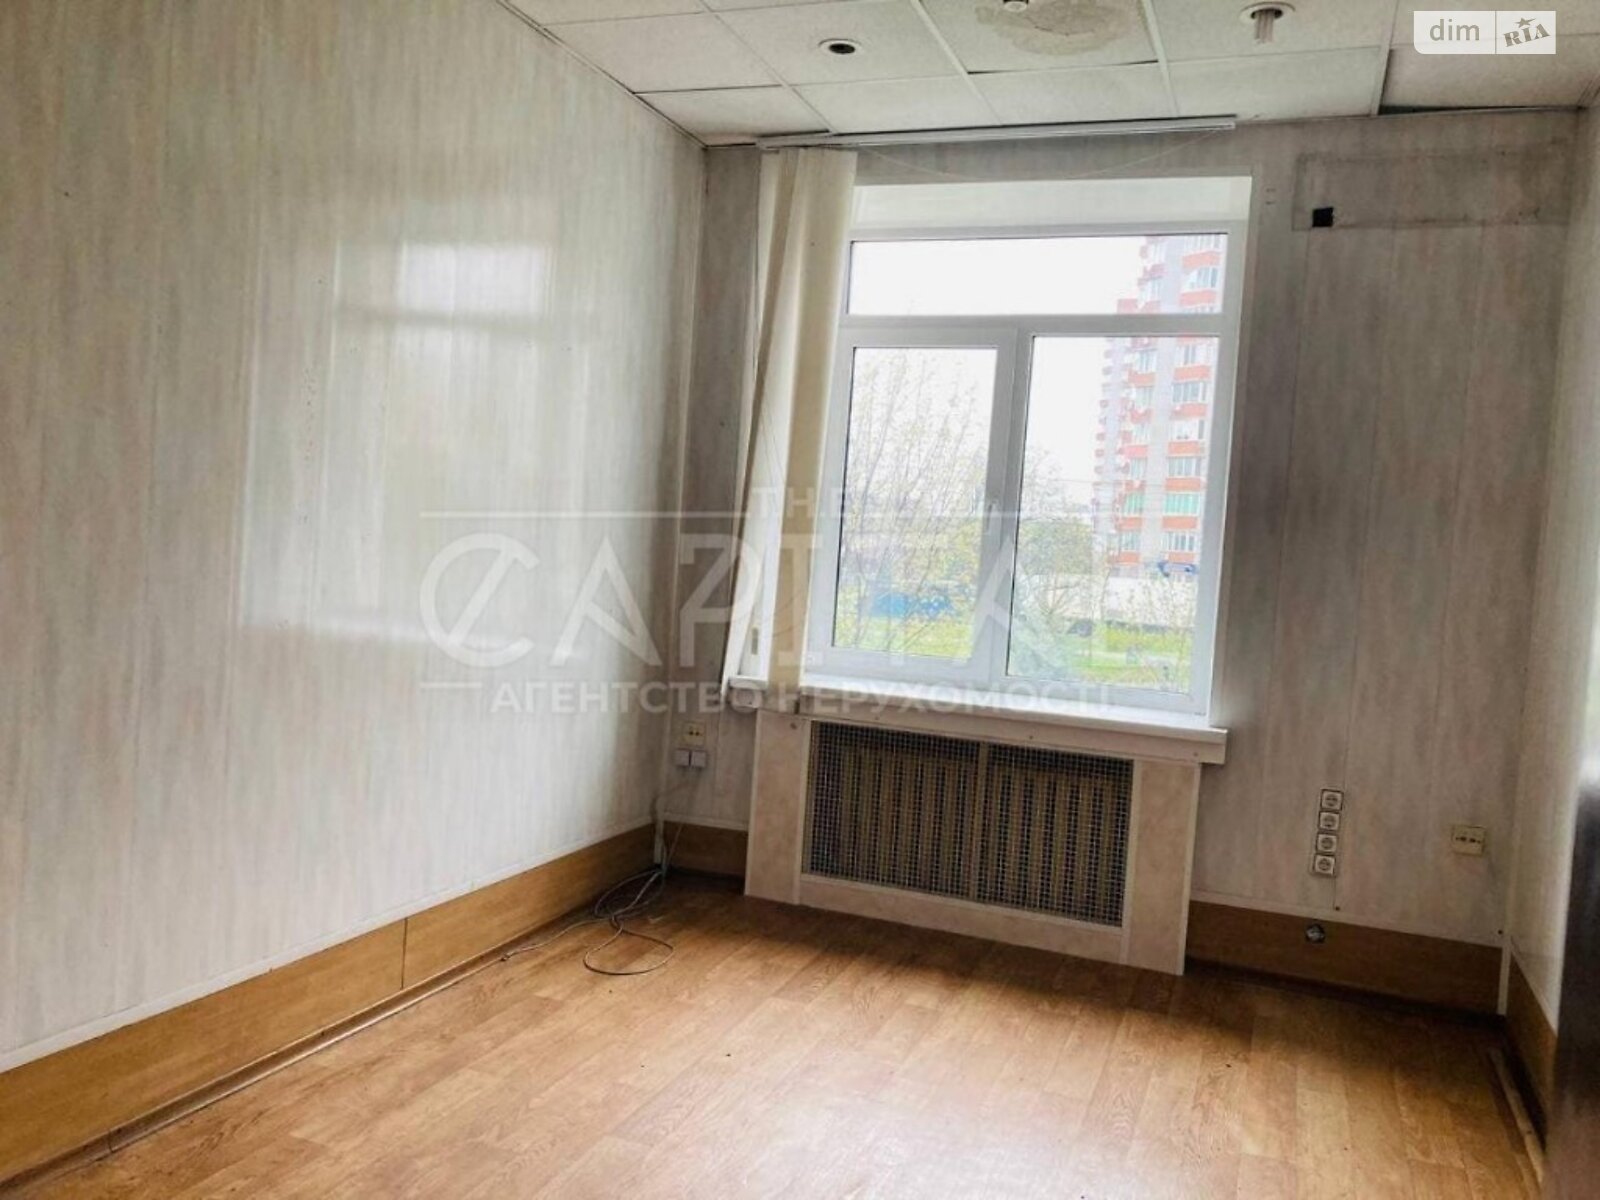 Аренда офисного помещения в Киеве, Верховного Совета бульвар 20, помещений -, этаж - 1 фото 1